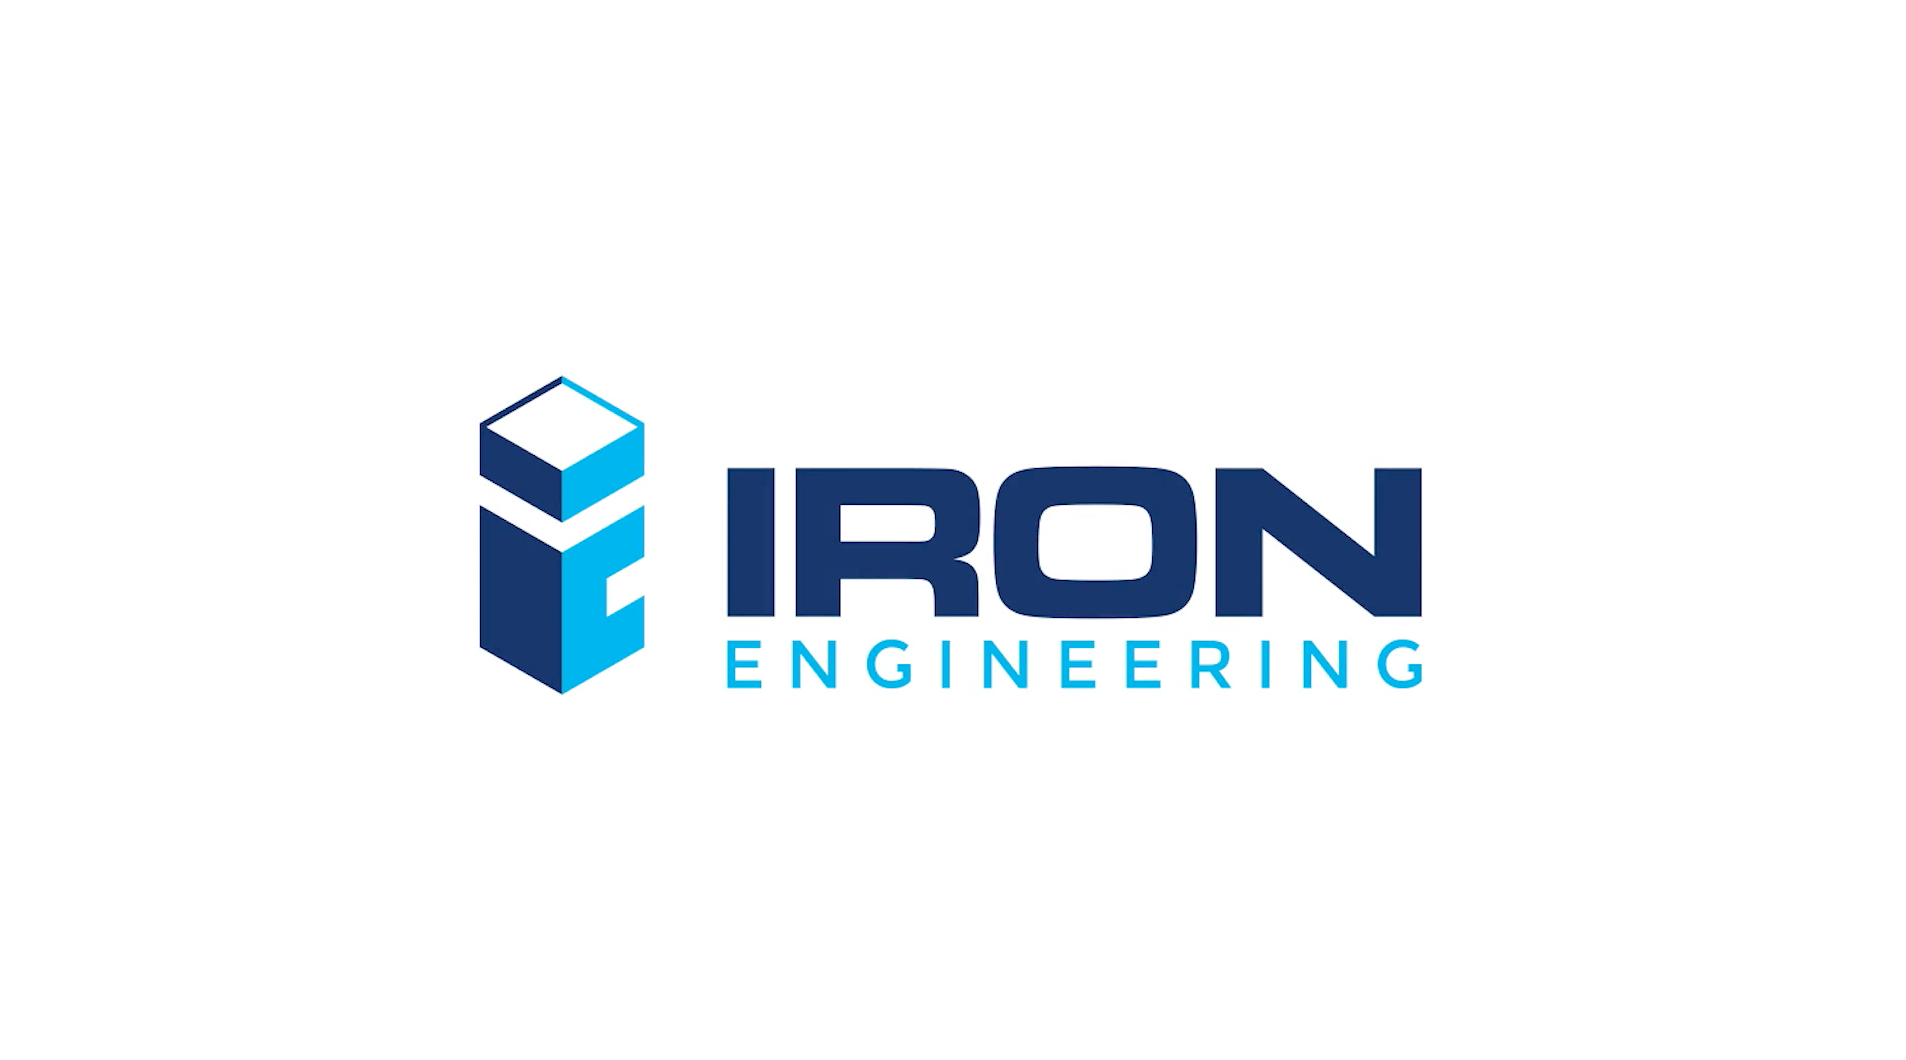 Iron Engineering